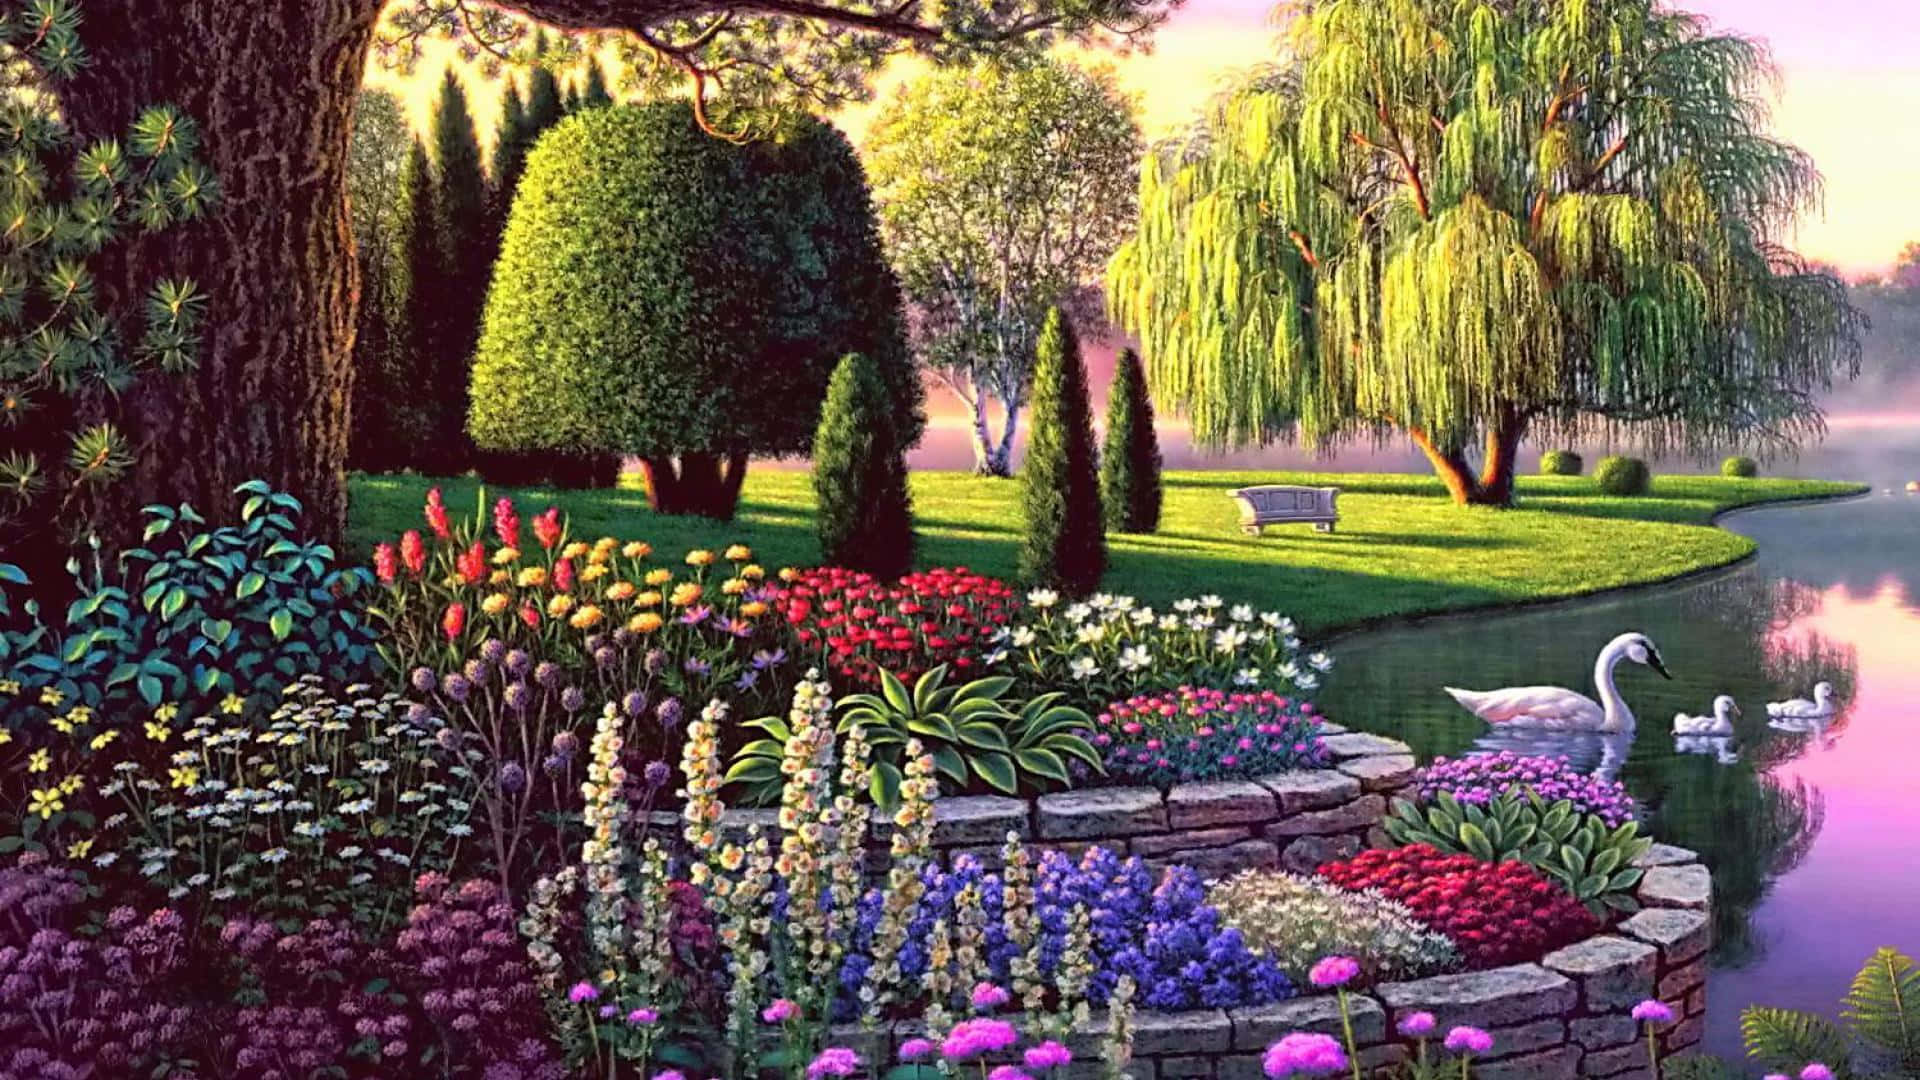 Enchanted Garden Wallpaper